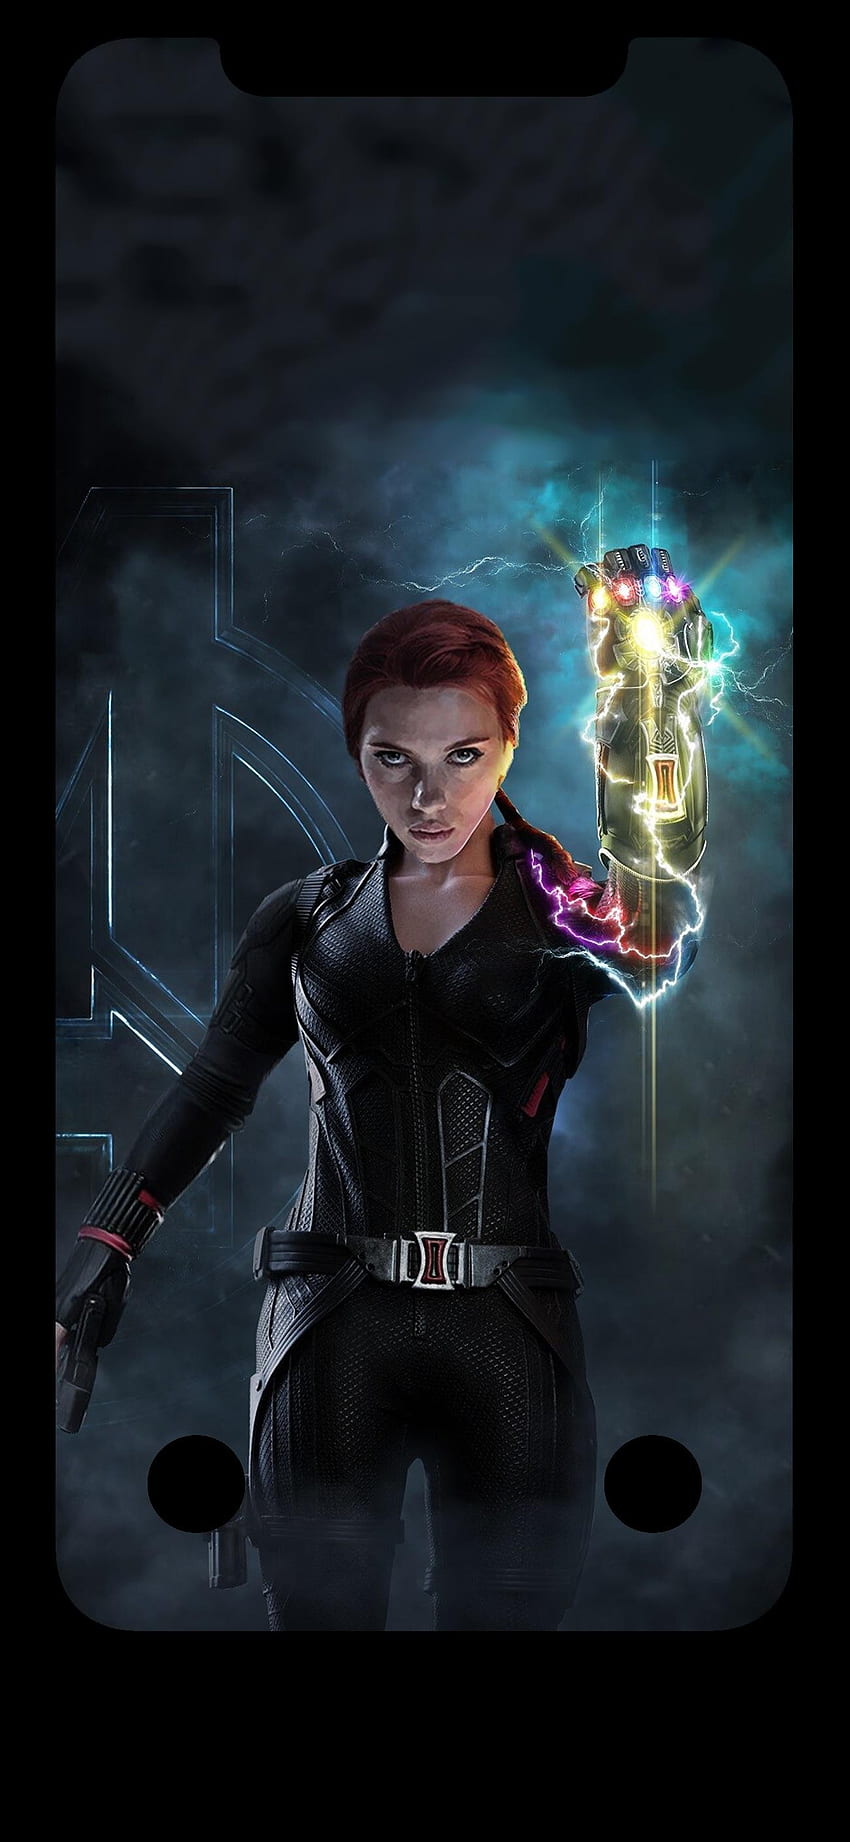 Black Widow - Endgame. iPhone X - iPhone X, Avengers Endgame Black Widow HD  phone wallpaper | Pxfuel